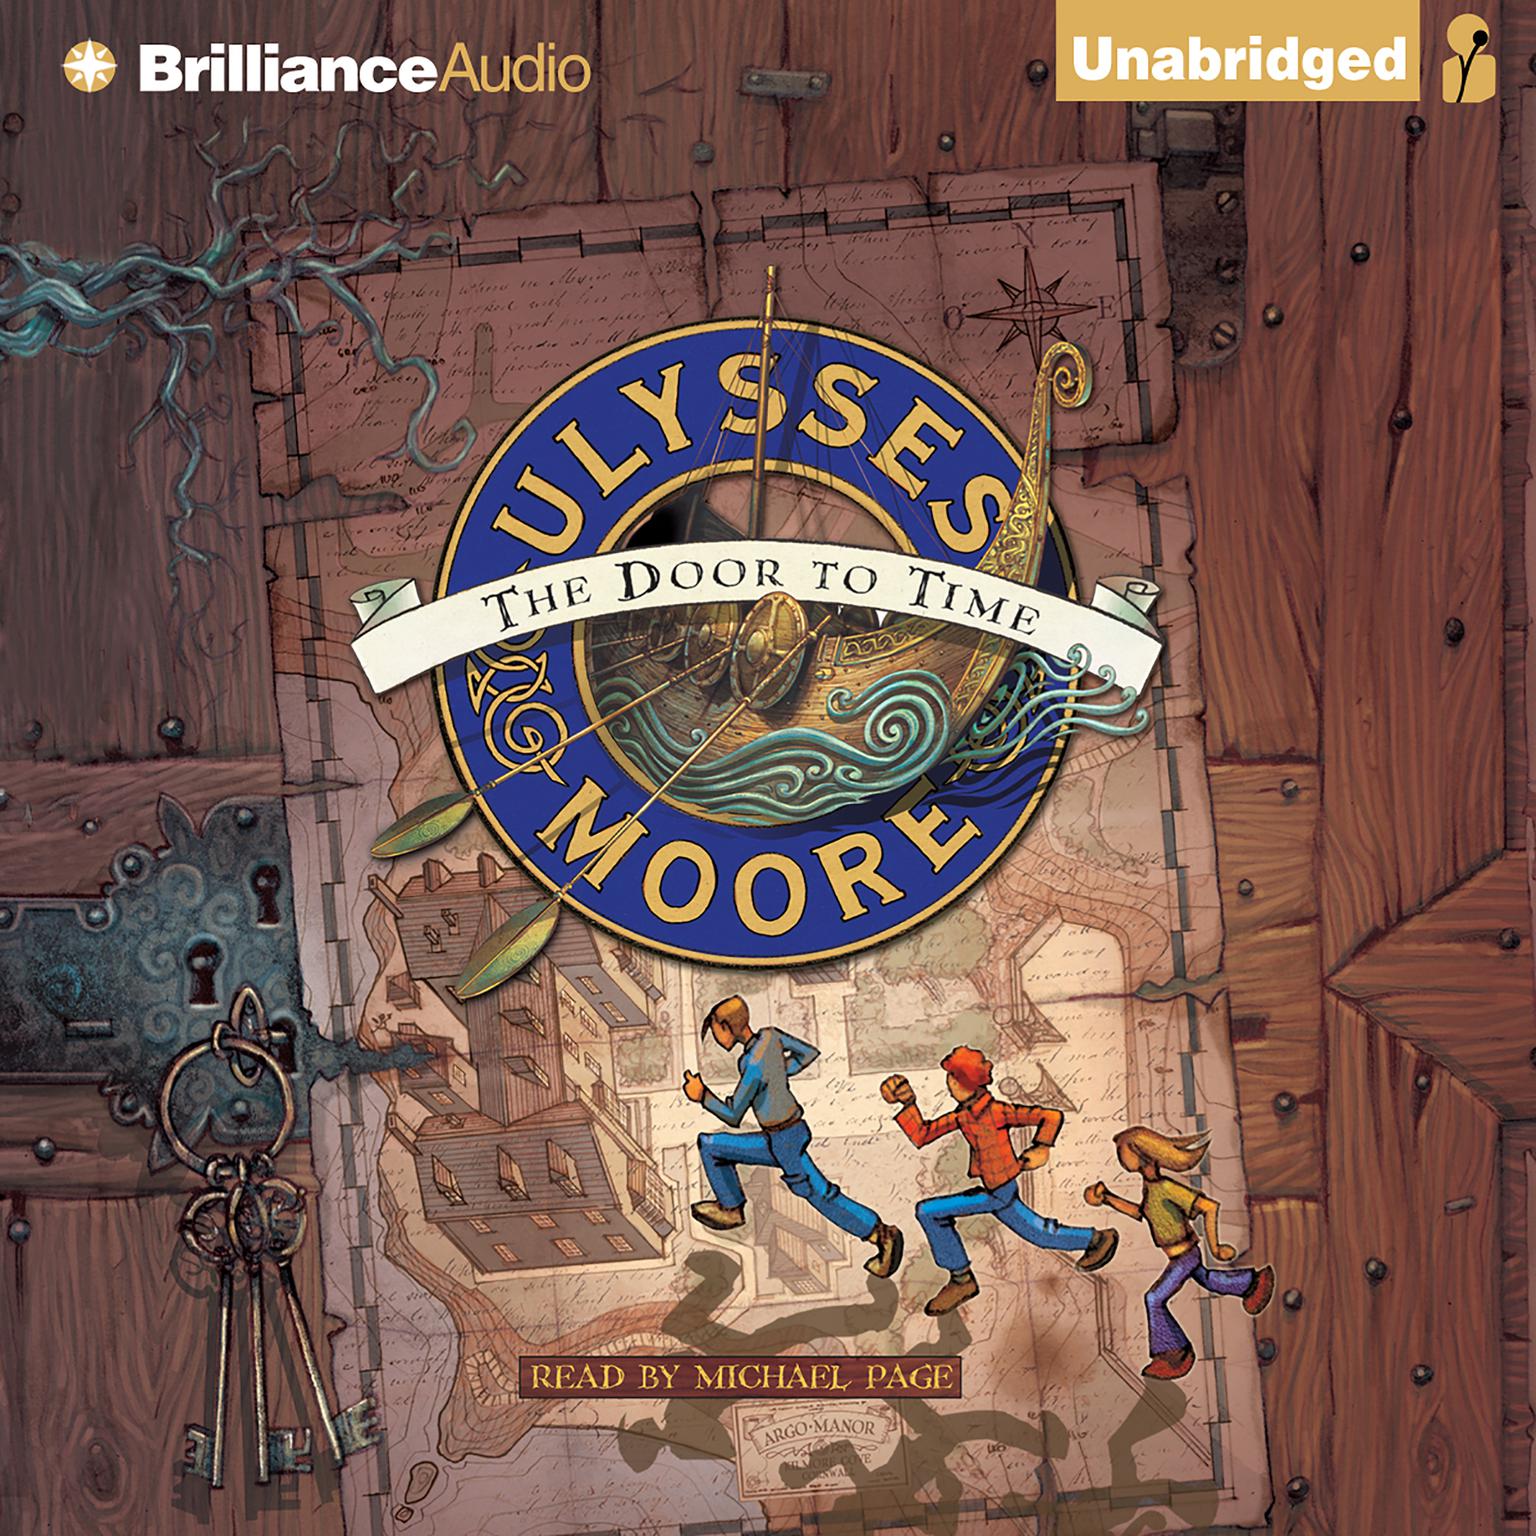 Ulysses Moore: The Door to Time Audiobook, by Pierdomenico Baccalario